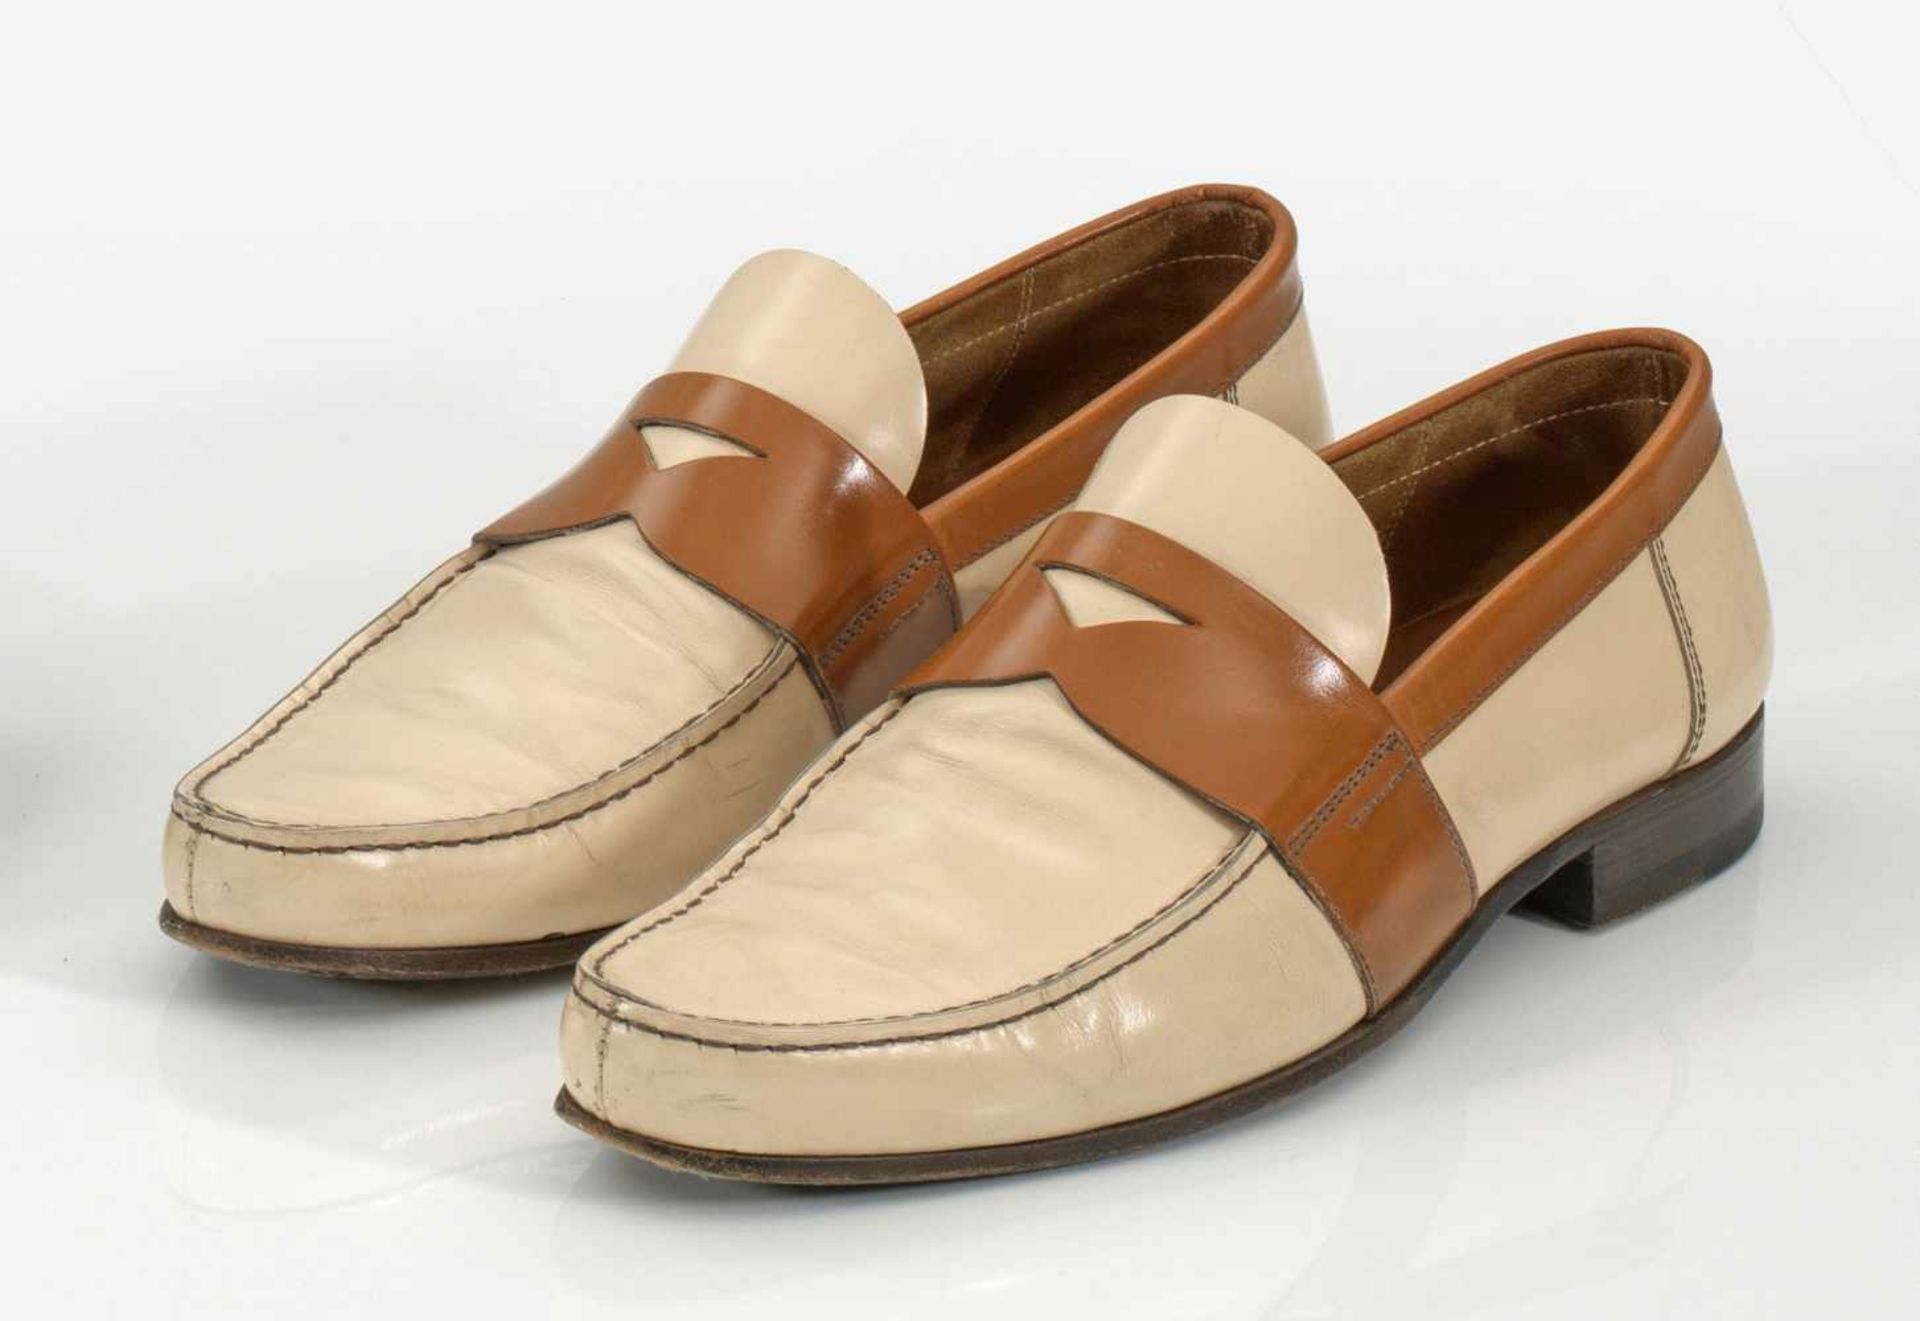 Paar Slipper von PRADACreme- und karamellfarbenes Leder. Spitz zulaufender Schuh mit Ledersohle.